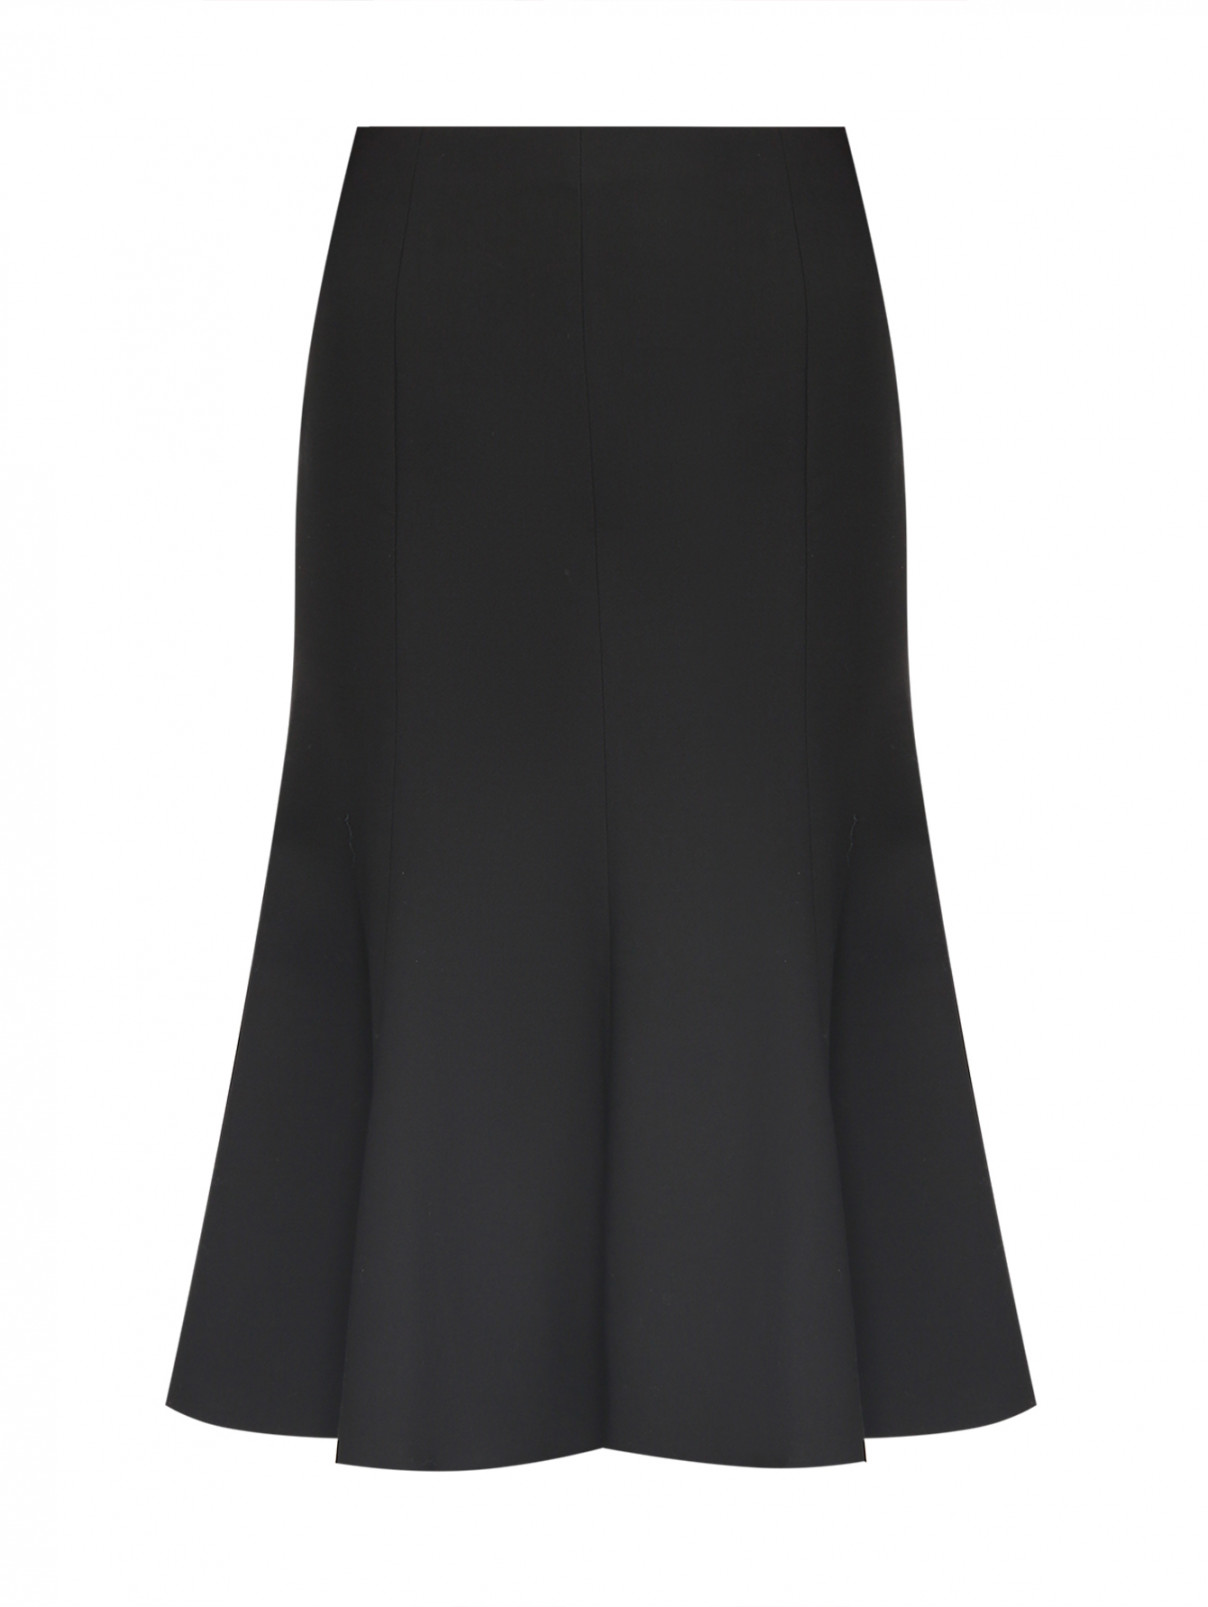 Однотонная юбка-колокол из шерсти Luisa Spagnoli  –  Общий вид  – Цвет:  Черный